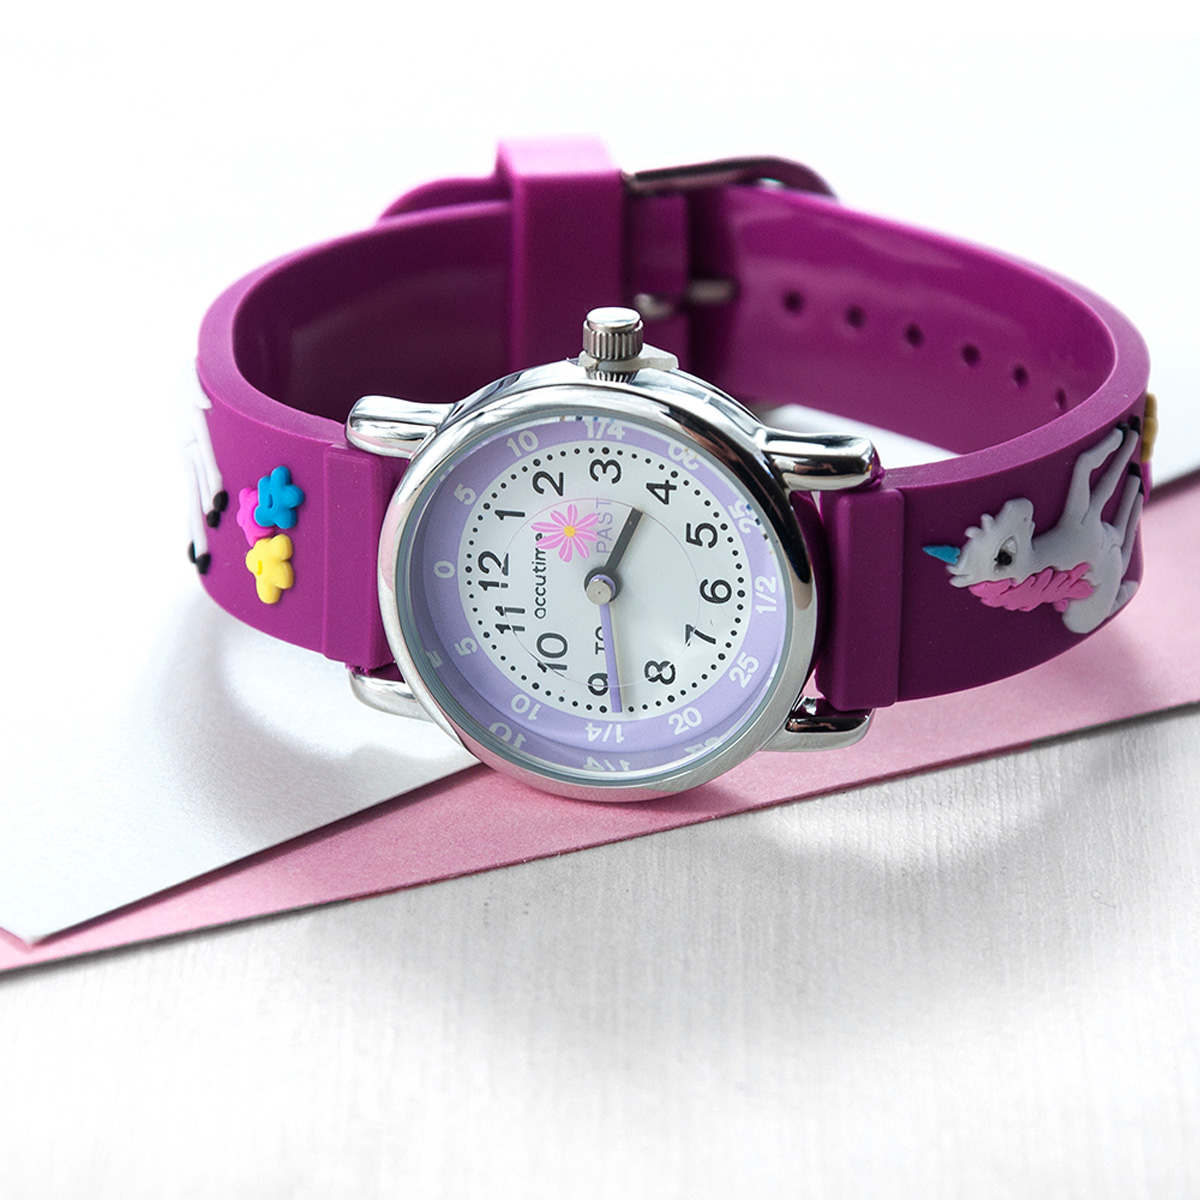 Personalised Children's Unicorn Watch